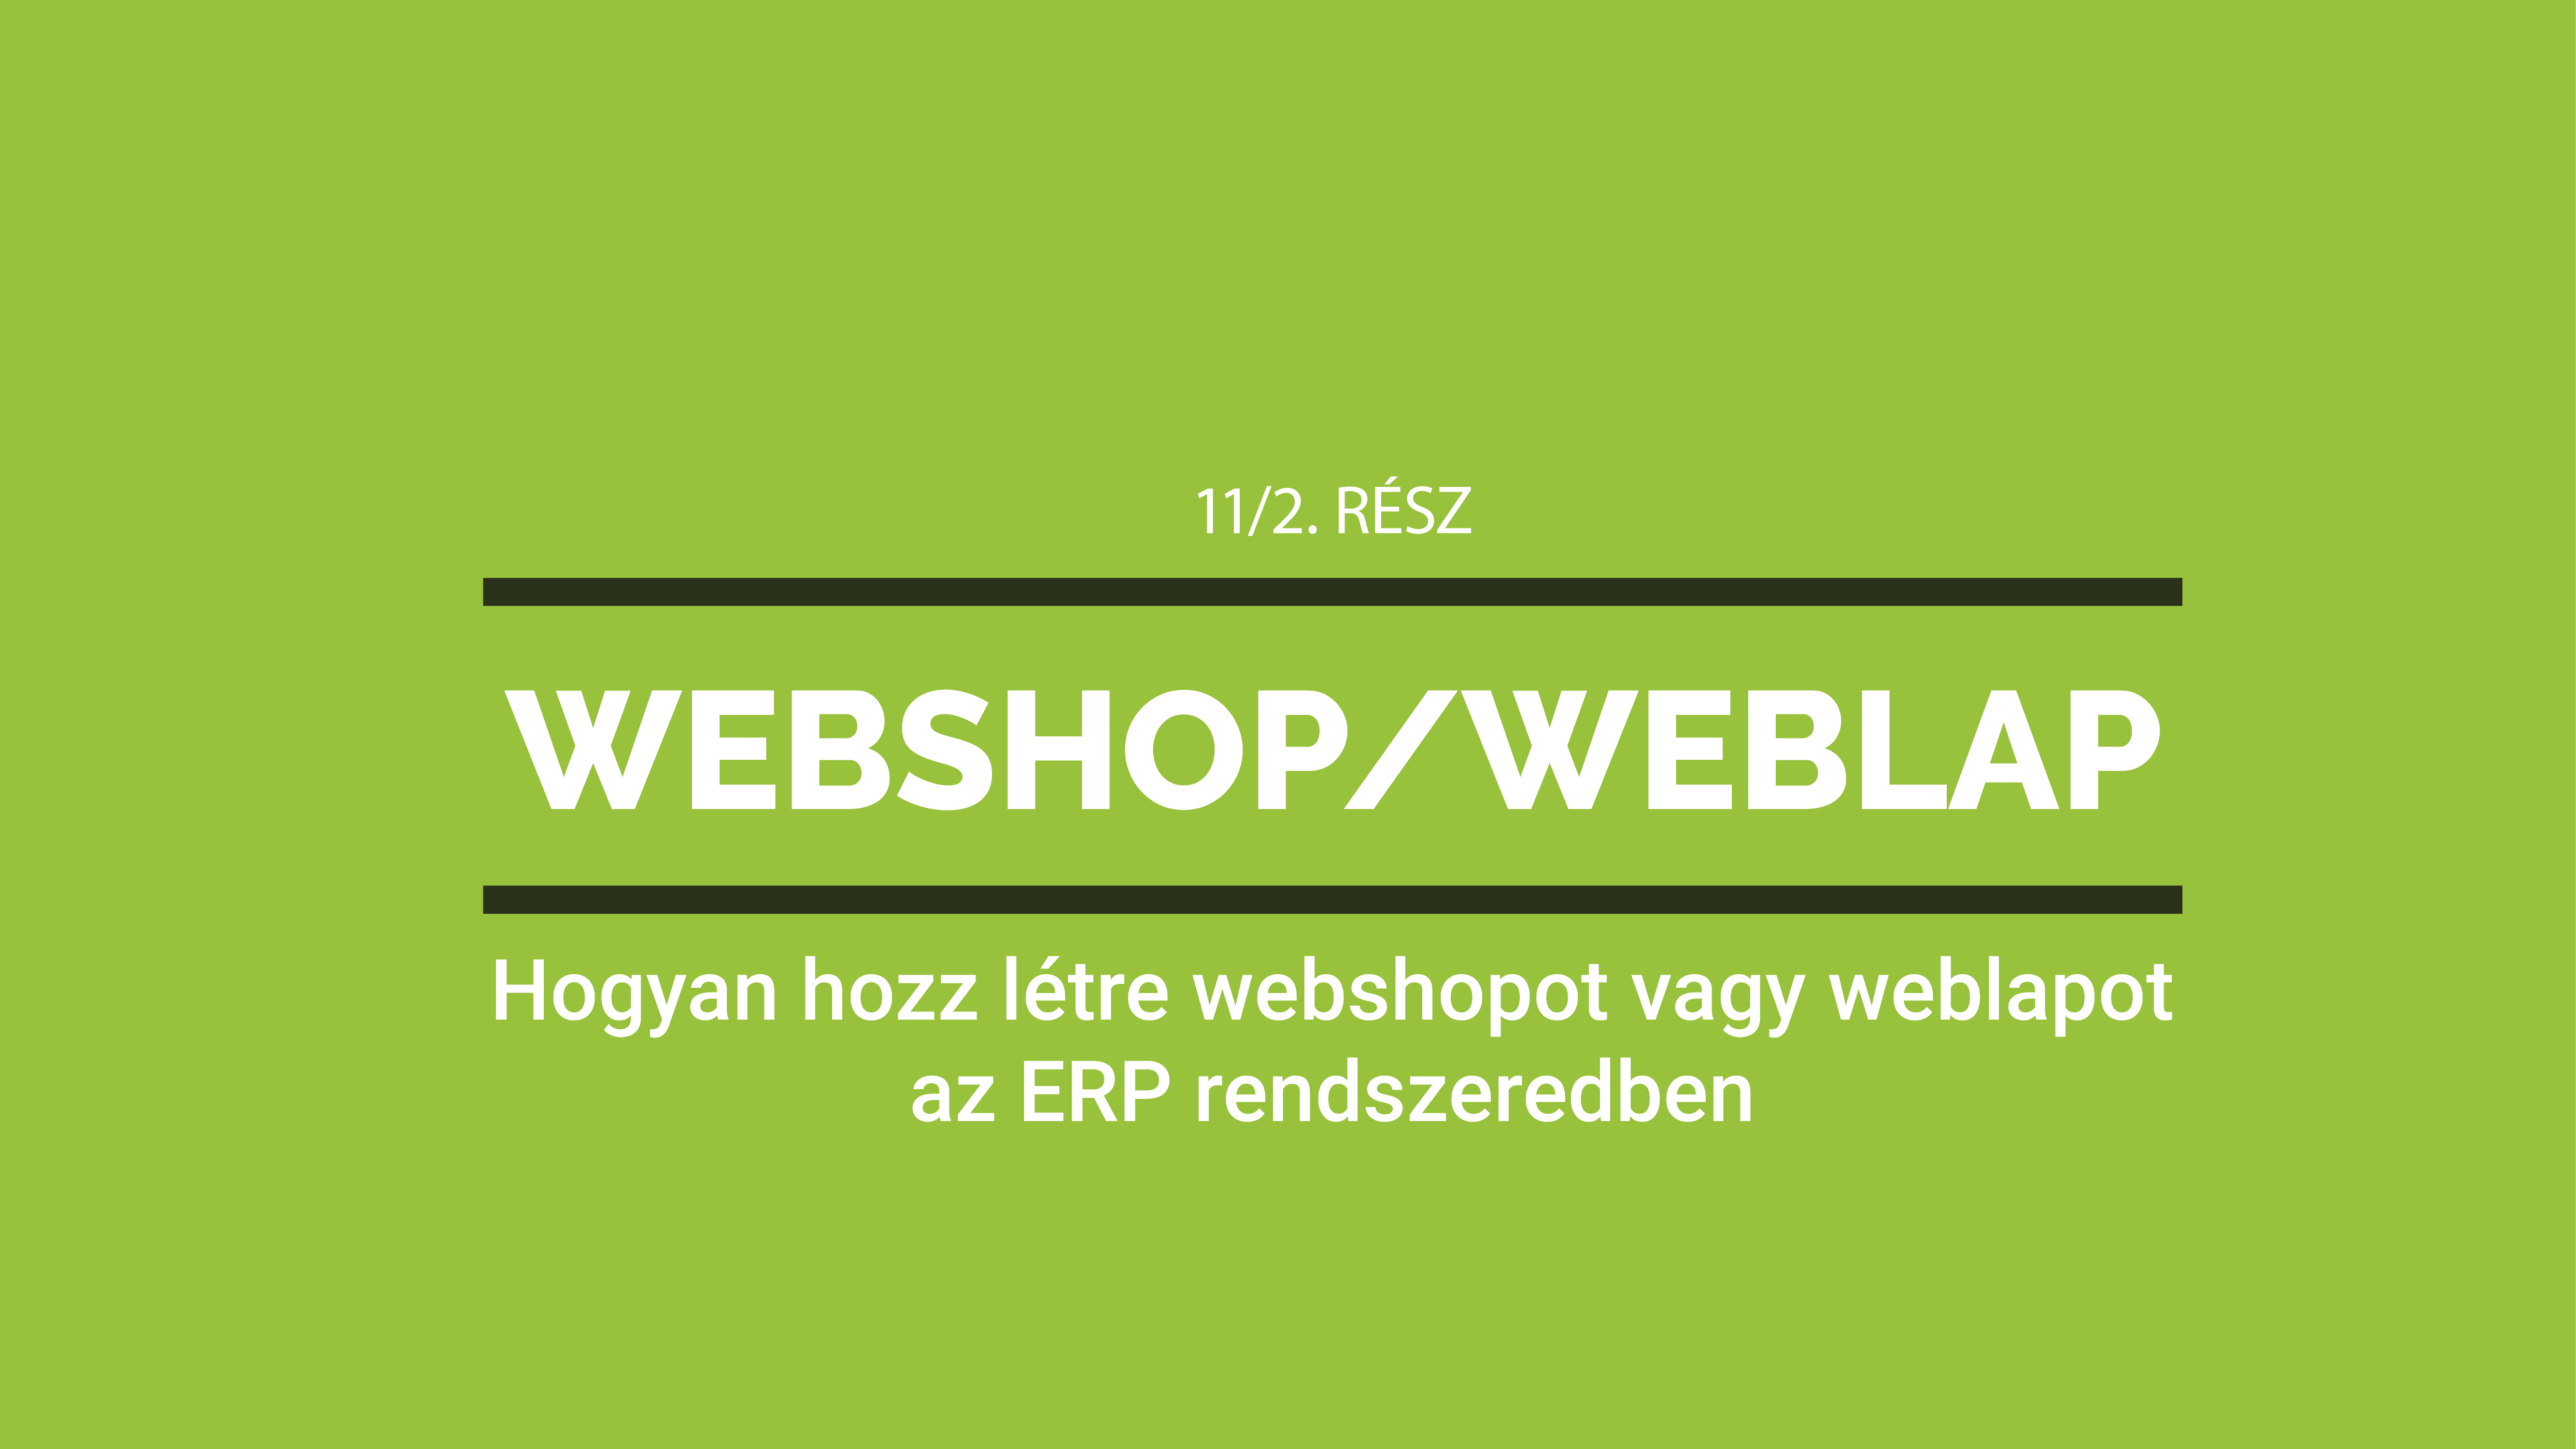 Hogyan hozz létre webshopot vagy weblapot ERP rendszeredben